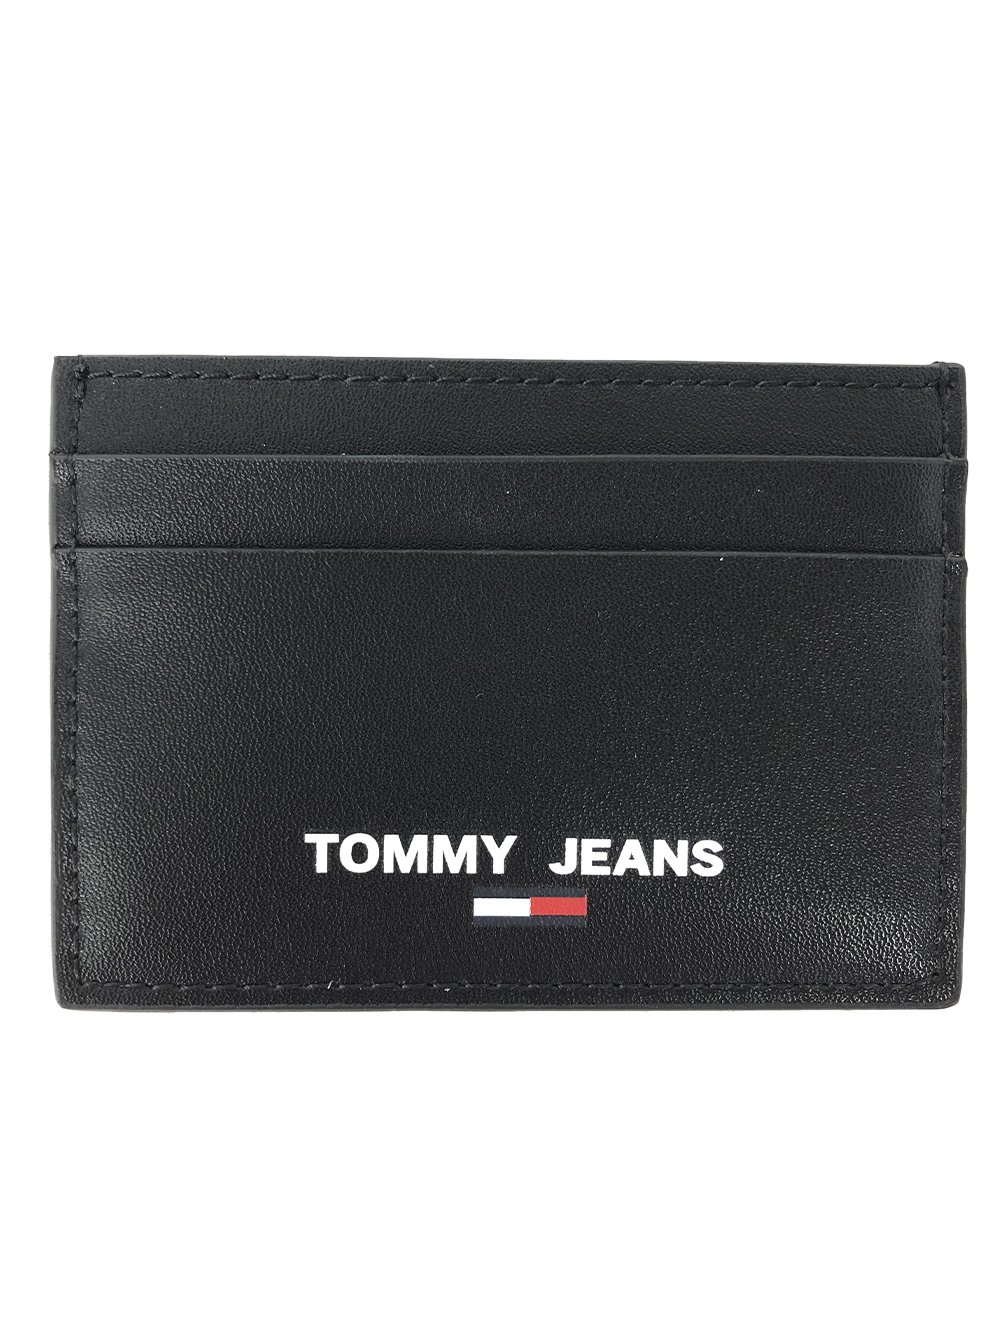 Carteira Tommy Jeans Masculina Porta Cartão Couro Essential CC Holder Preta